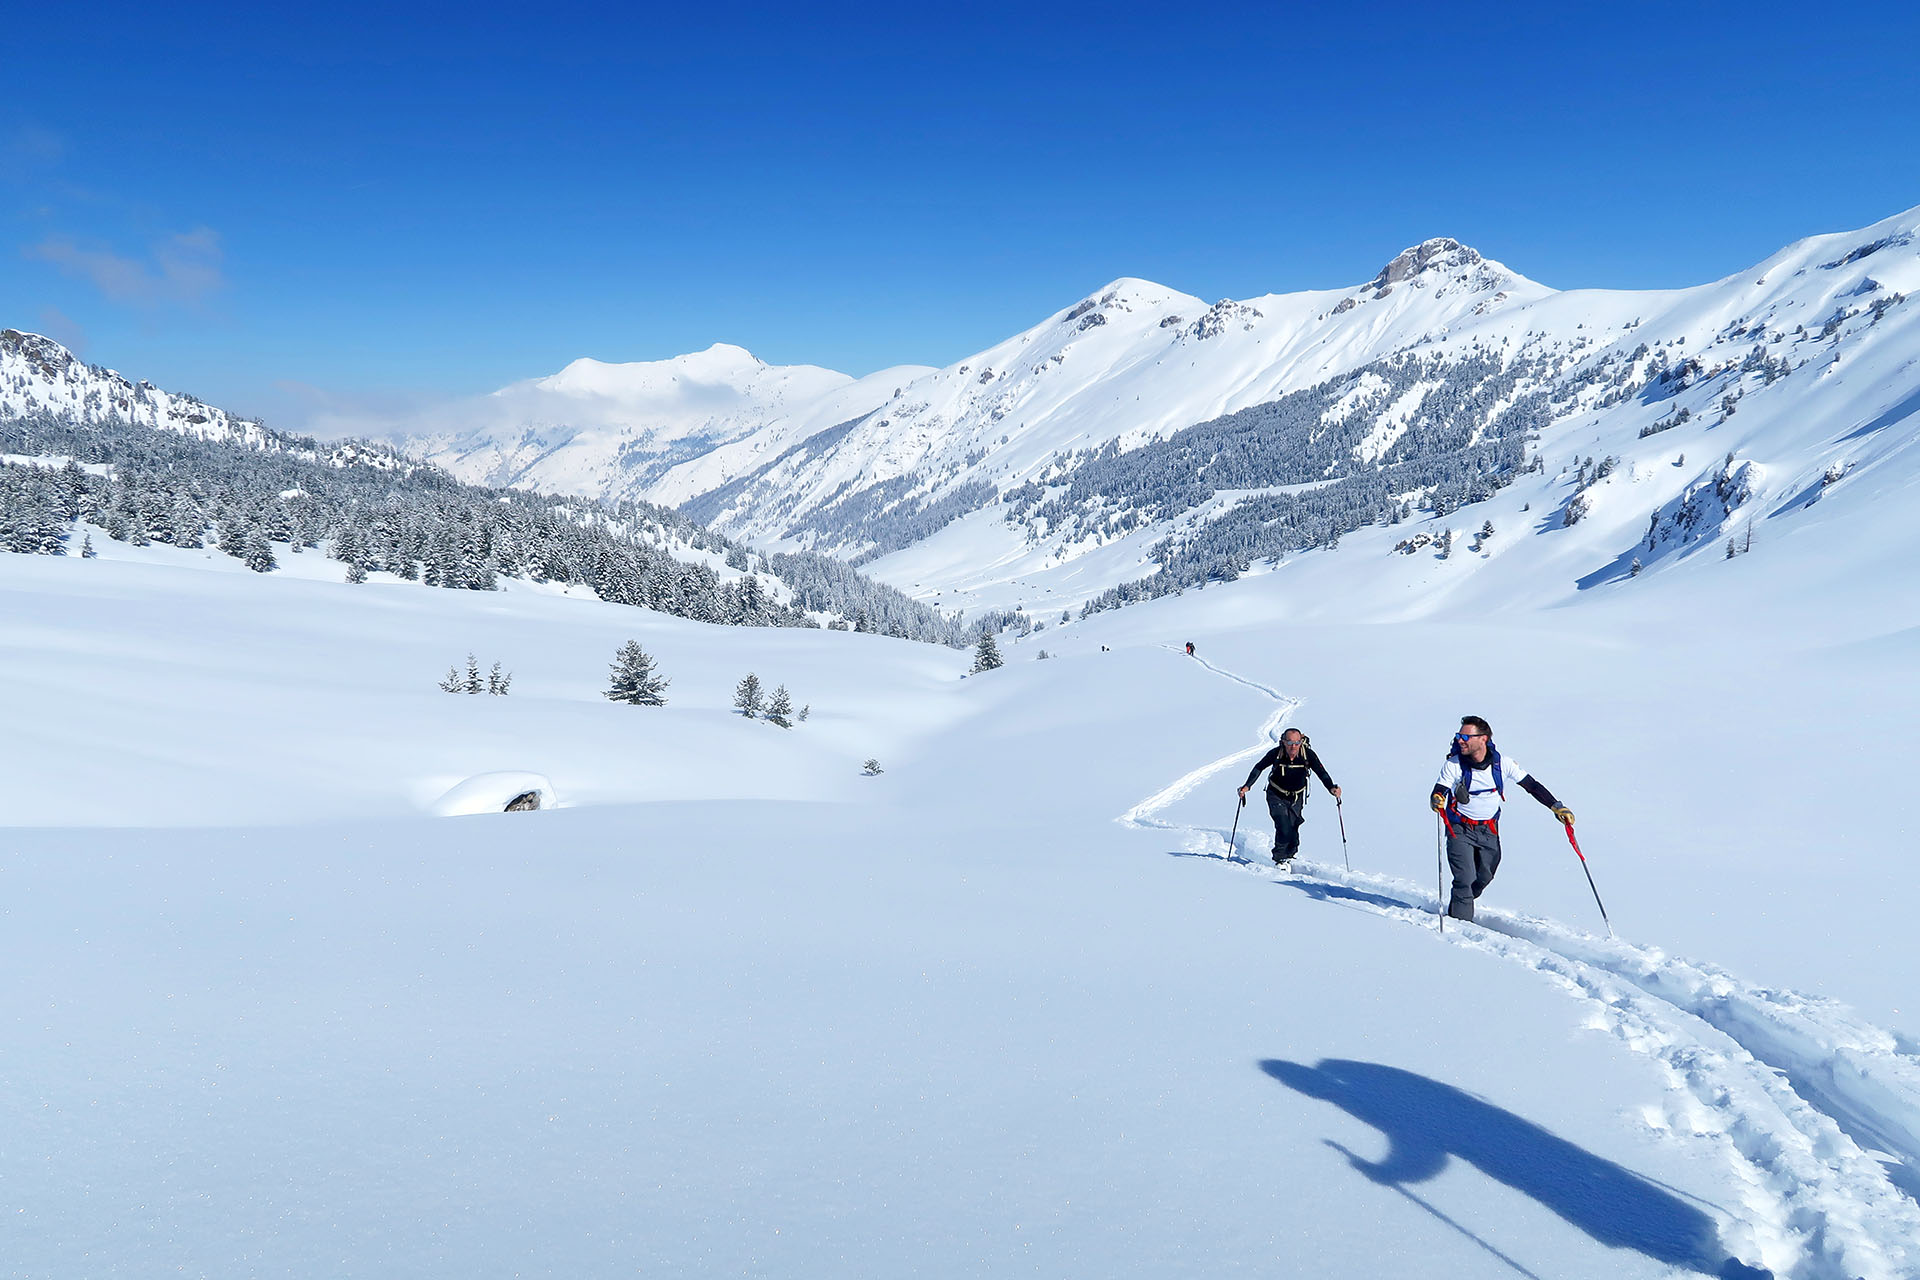 Ski touring week in wild Montenegro in Prokletije